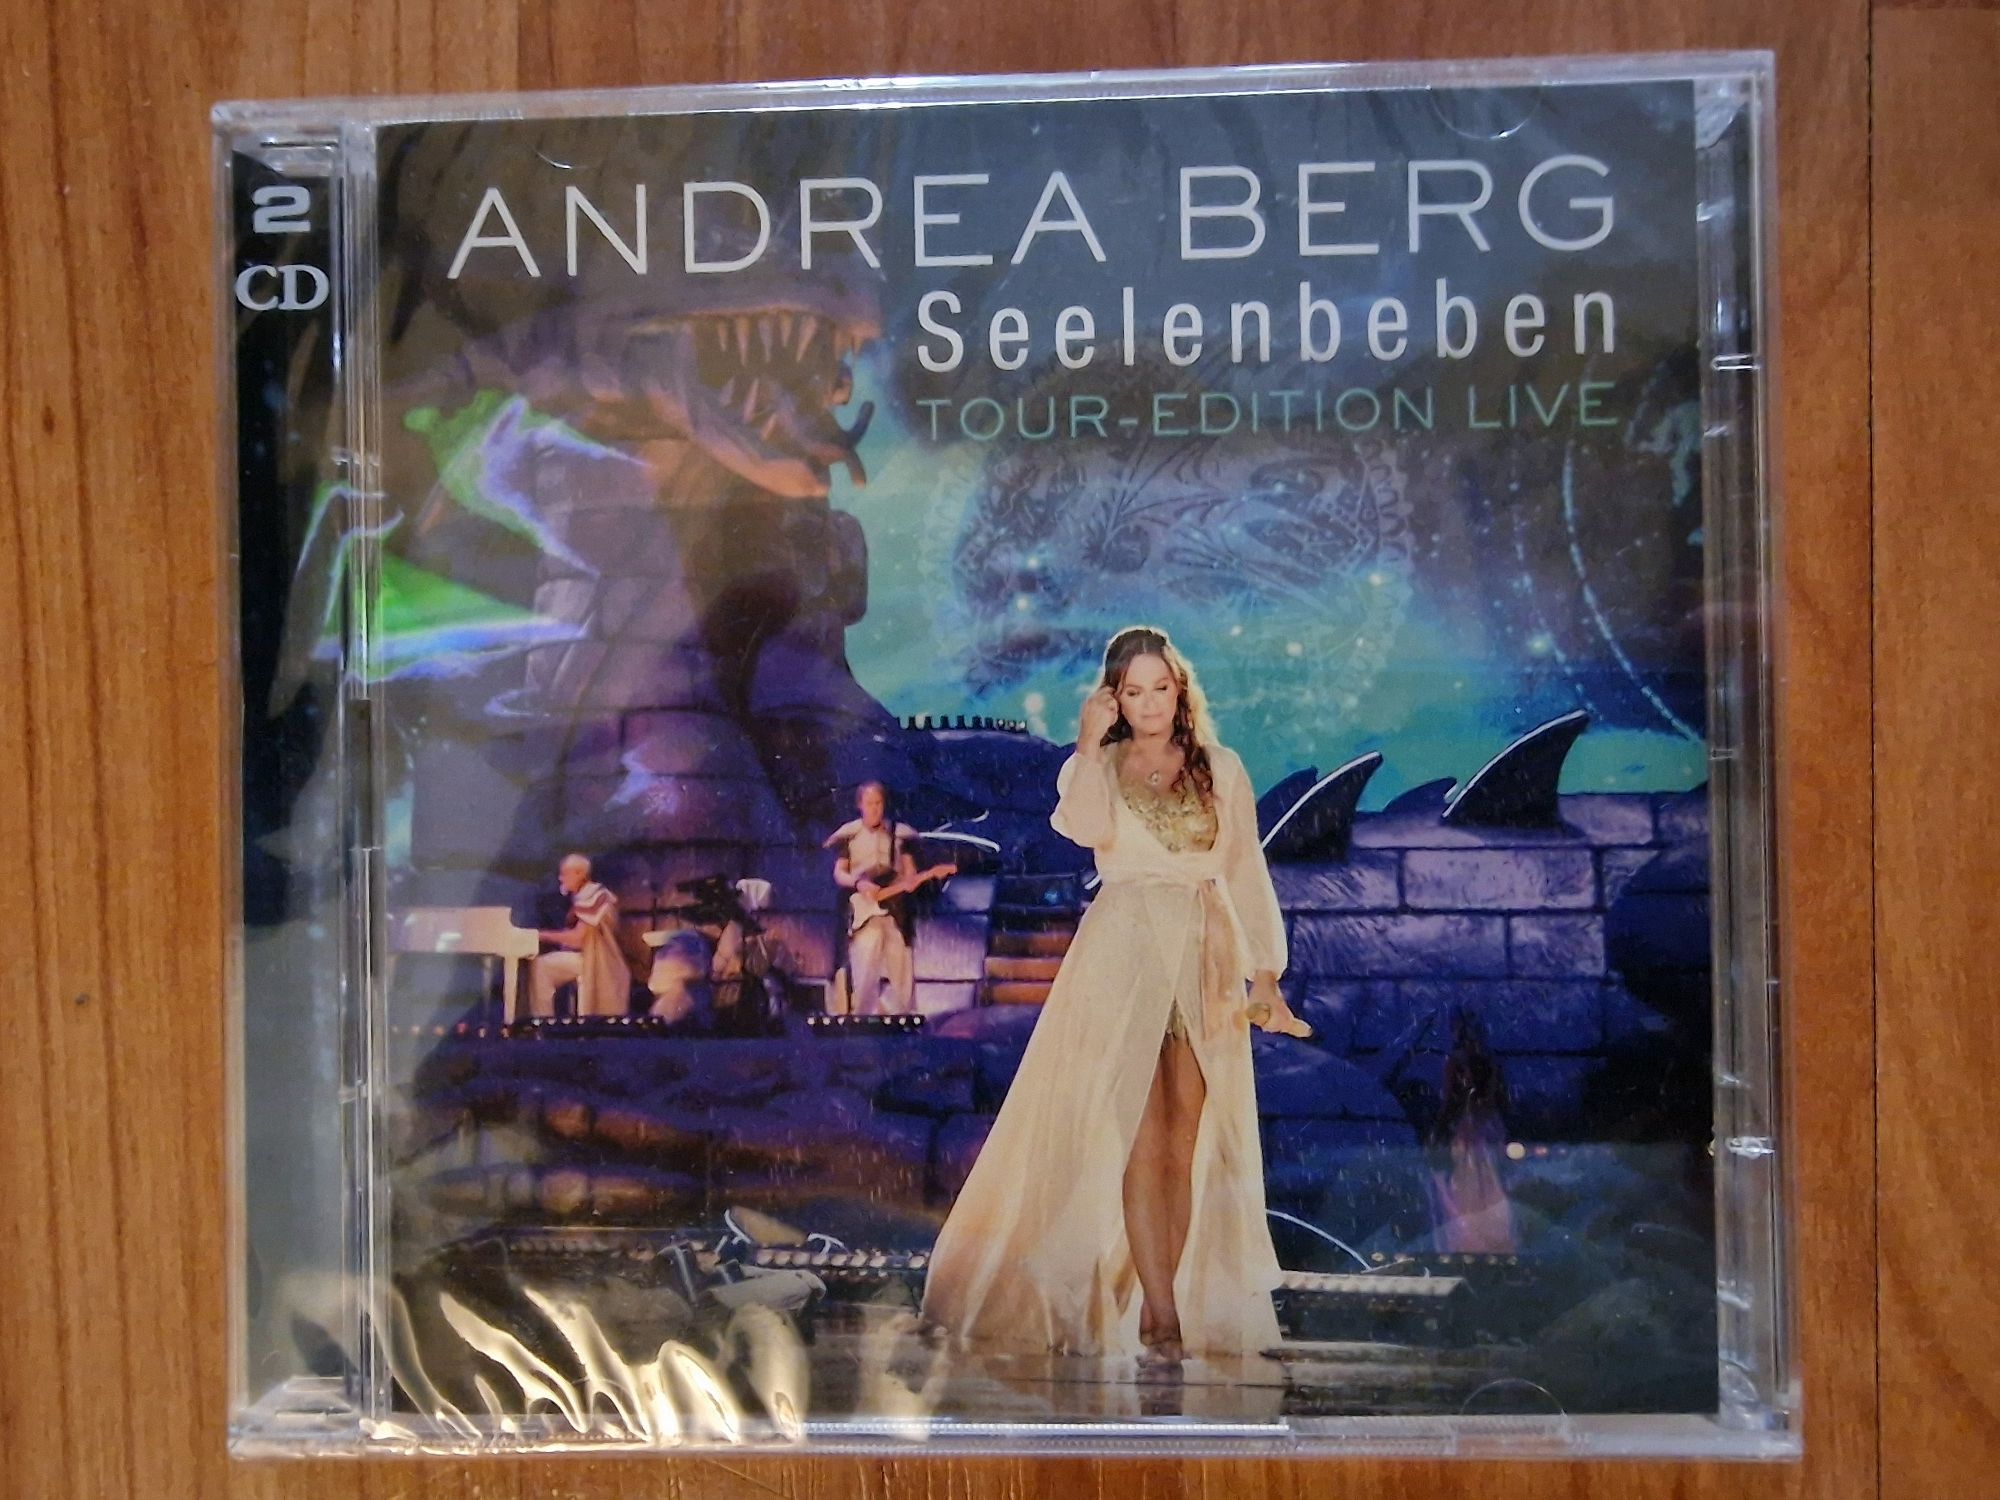 CD Muzica : Andrea Berg - Seelenbeben 2 CD (Edition Live Tour) 2017